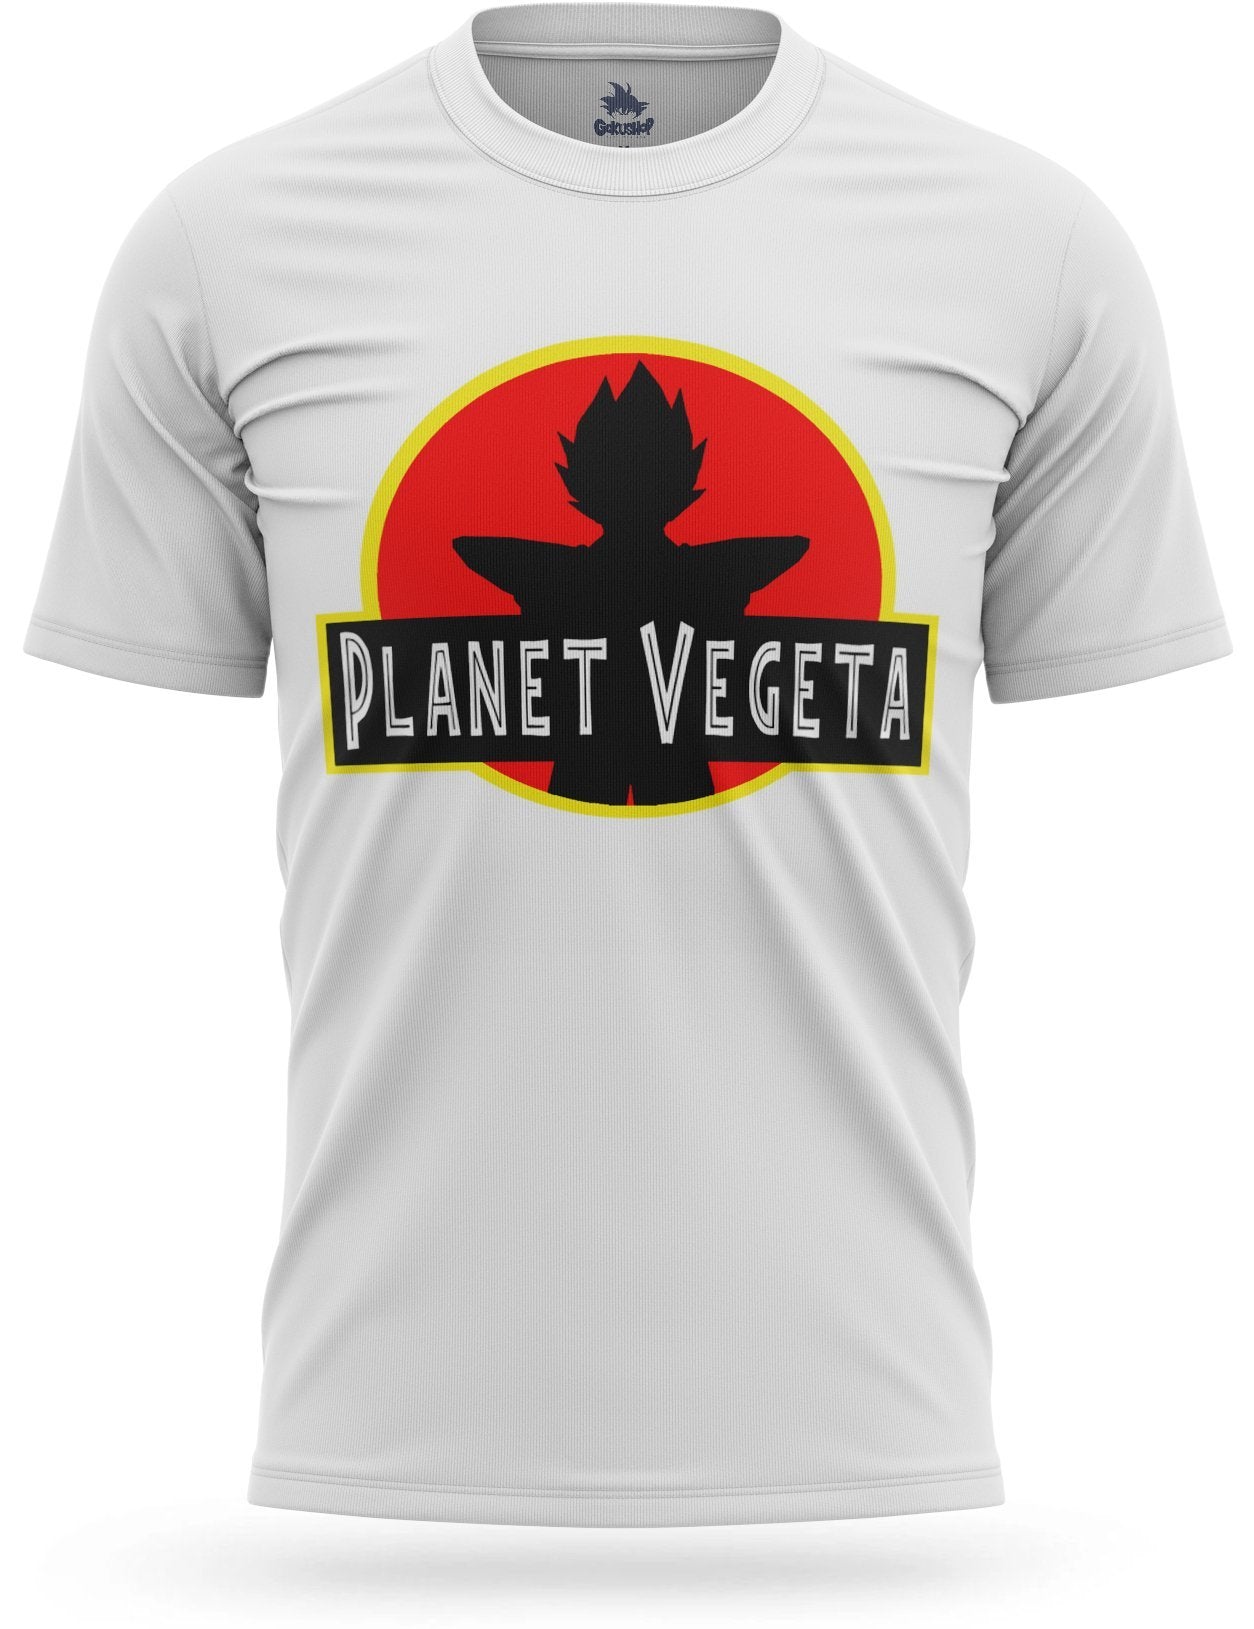 Dragon Ball Z Planet Vegeta T-Shirt